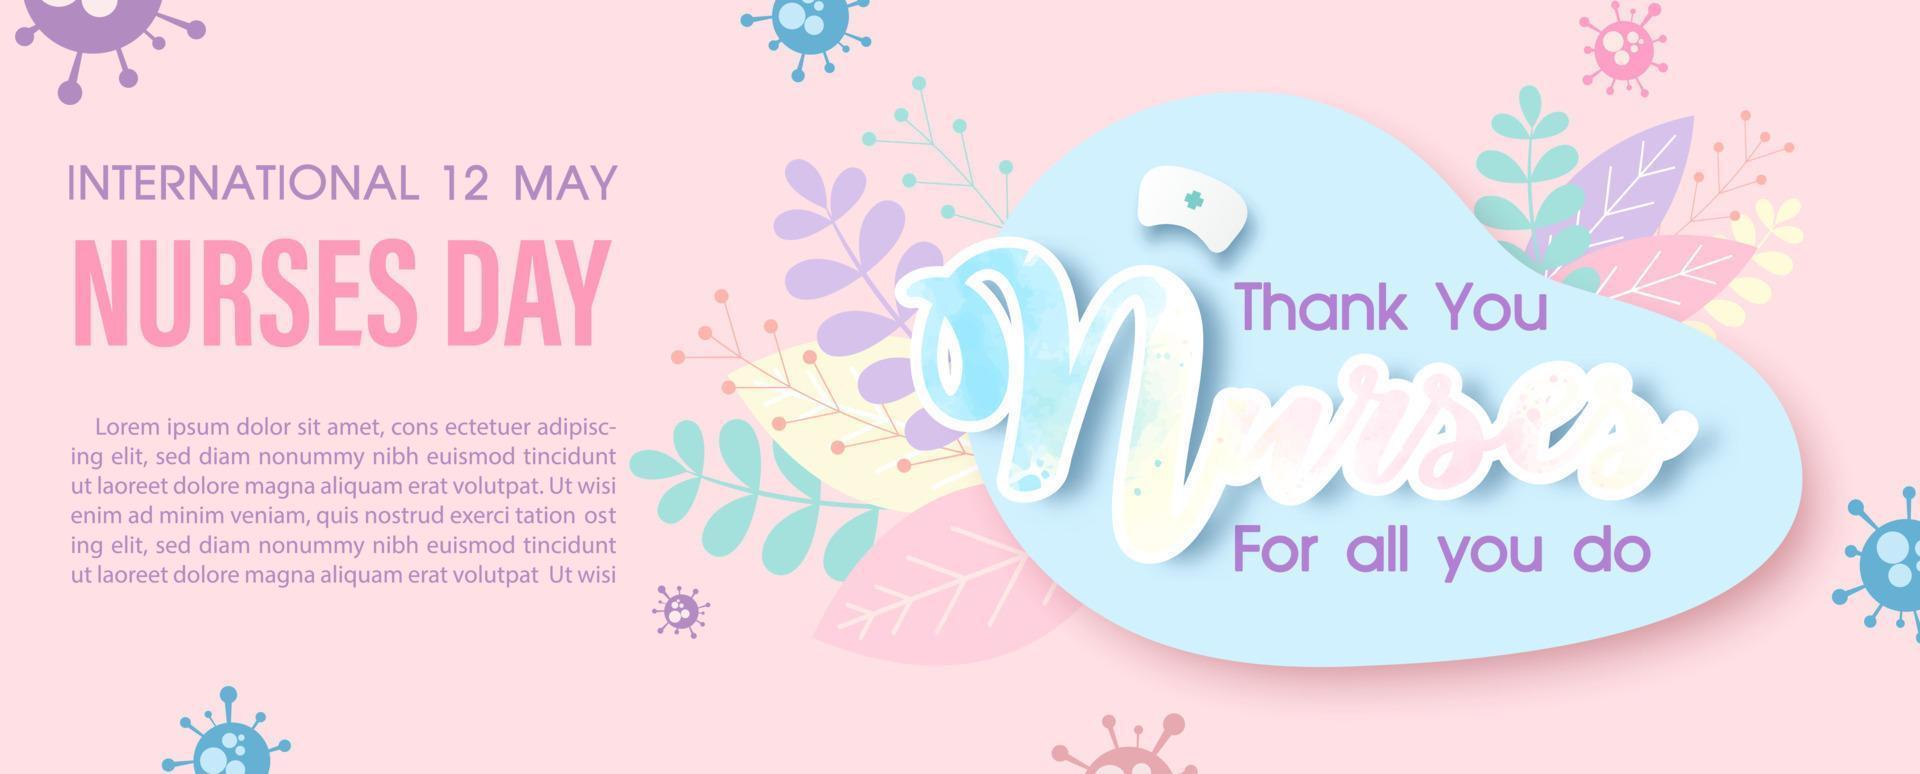 tacka du sjuksköterskor lydelse med de dag, namn av händelse, exempel texter på dekoration växter och virus symboler med rosa bakgrund. affisch kampanj av internationell sjuksköterskor dag i baner vektor design.